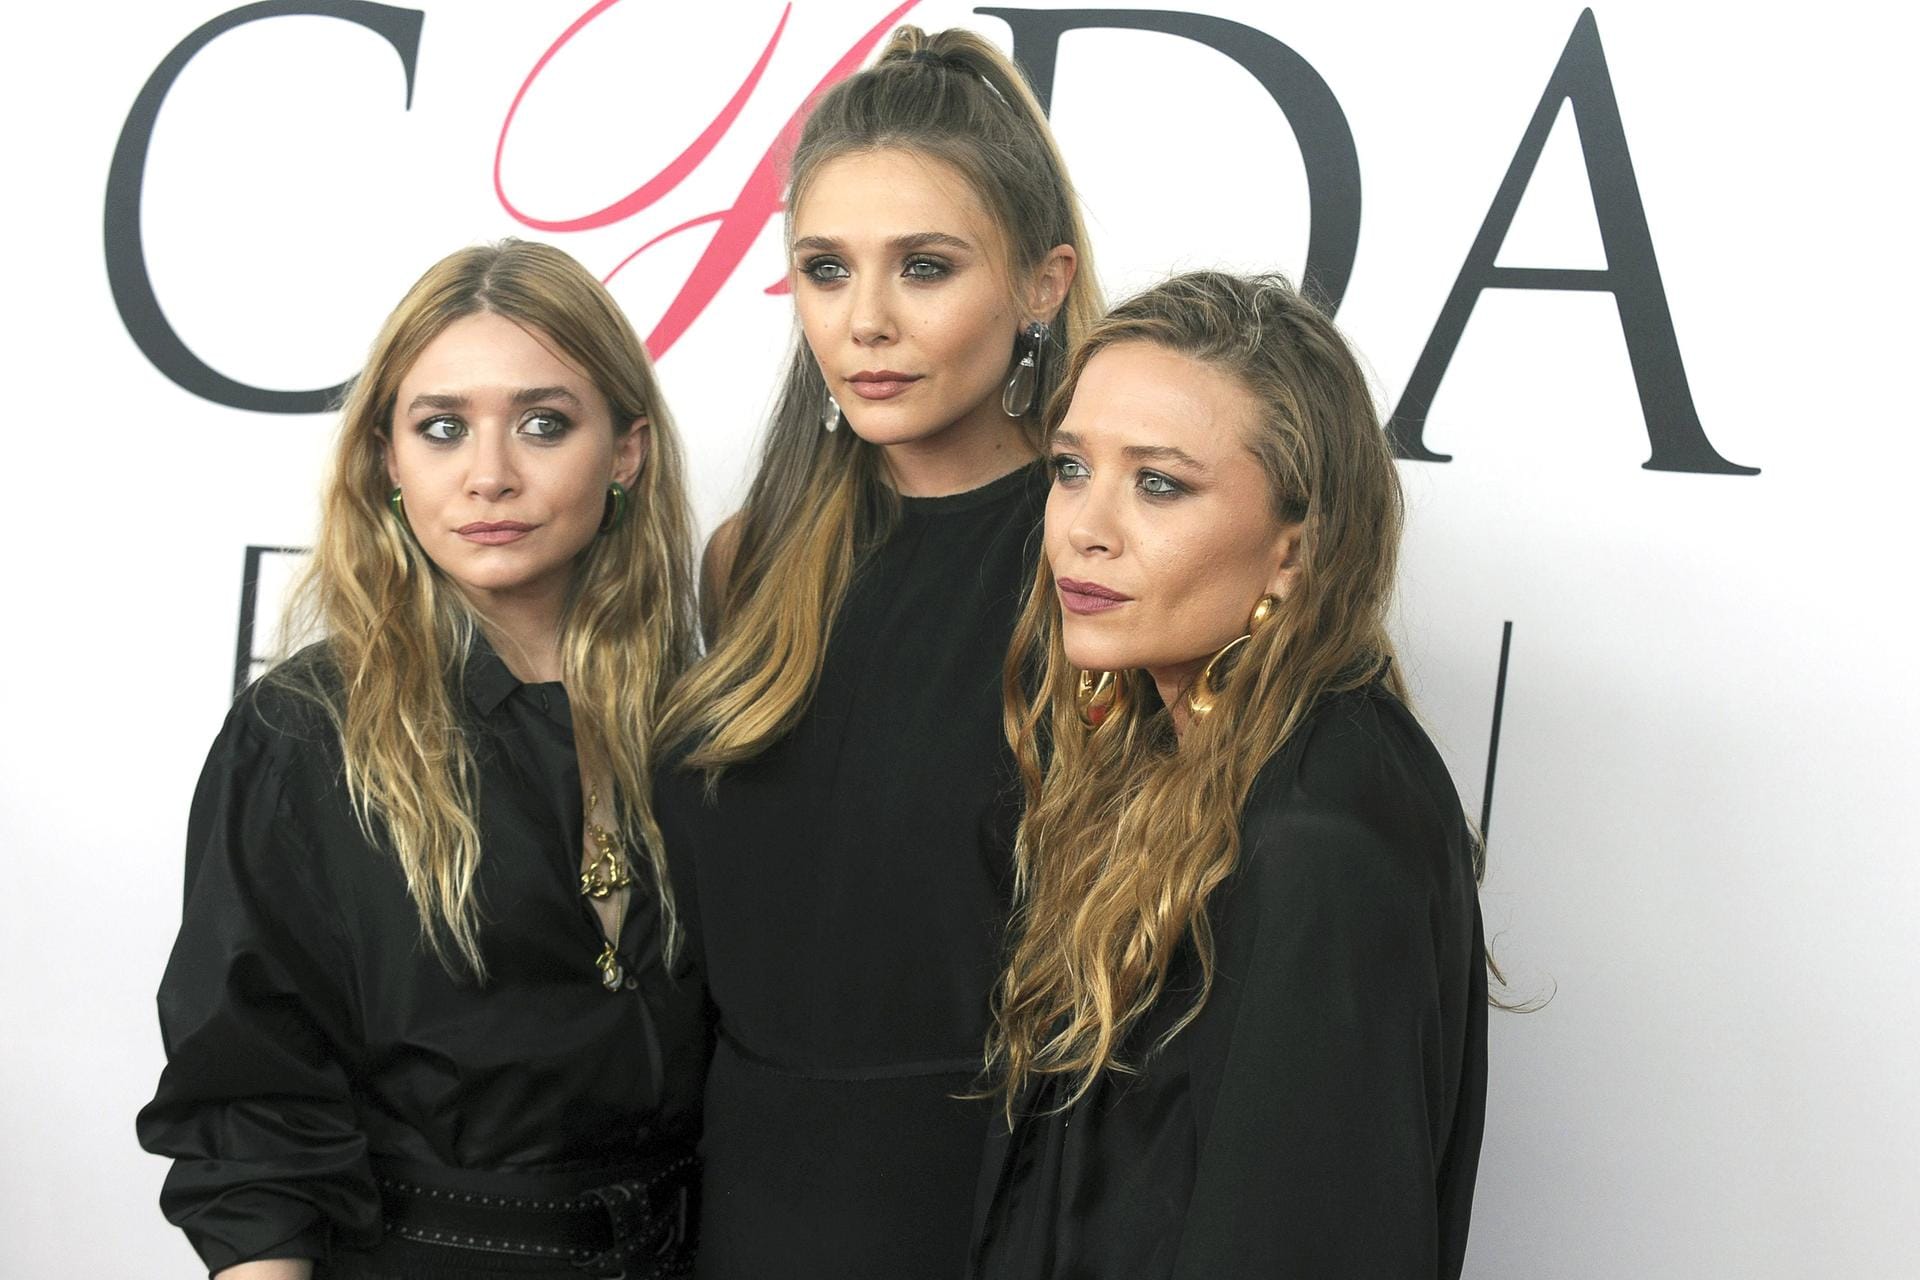 Ashley Olsen, die jüngere Schwester Elizabeth Olsen und Mary-Kate Olsen bei der Verleihung der CFDA Fashion Awards 2016 in New York.